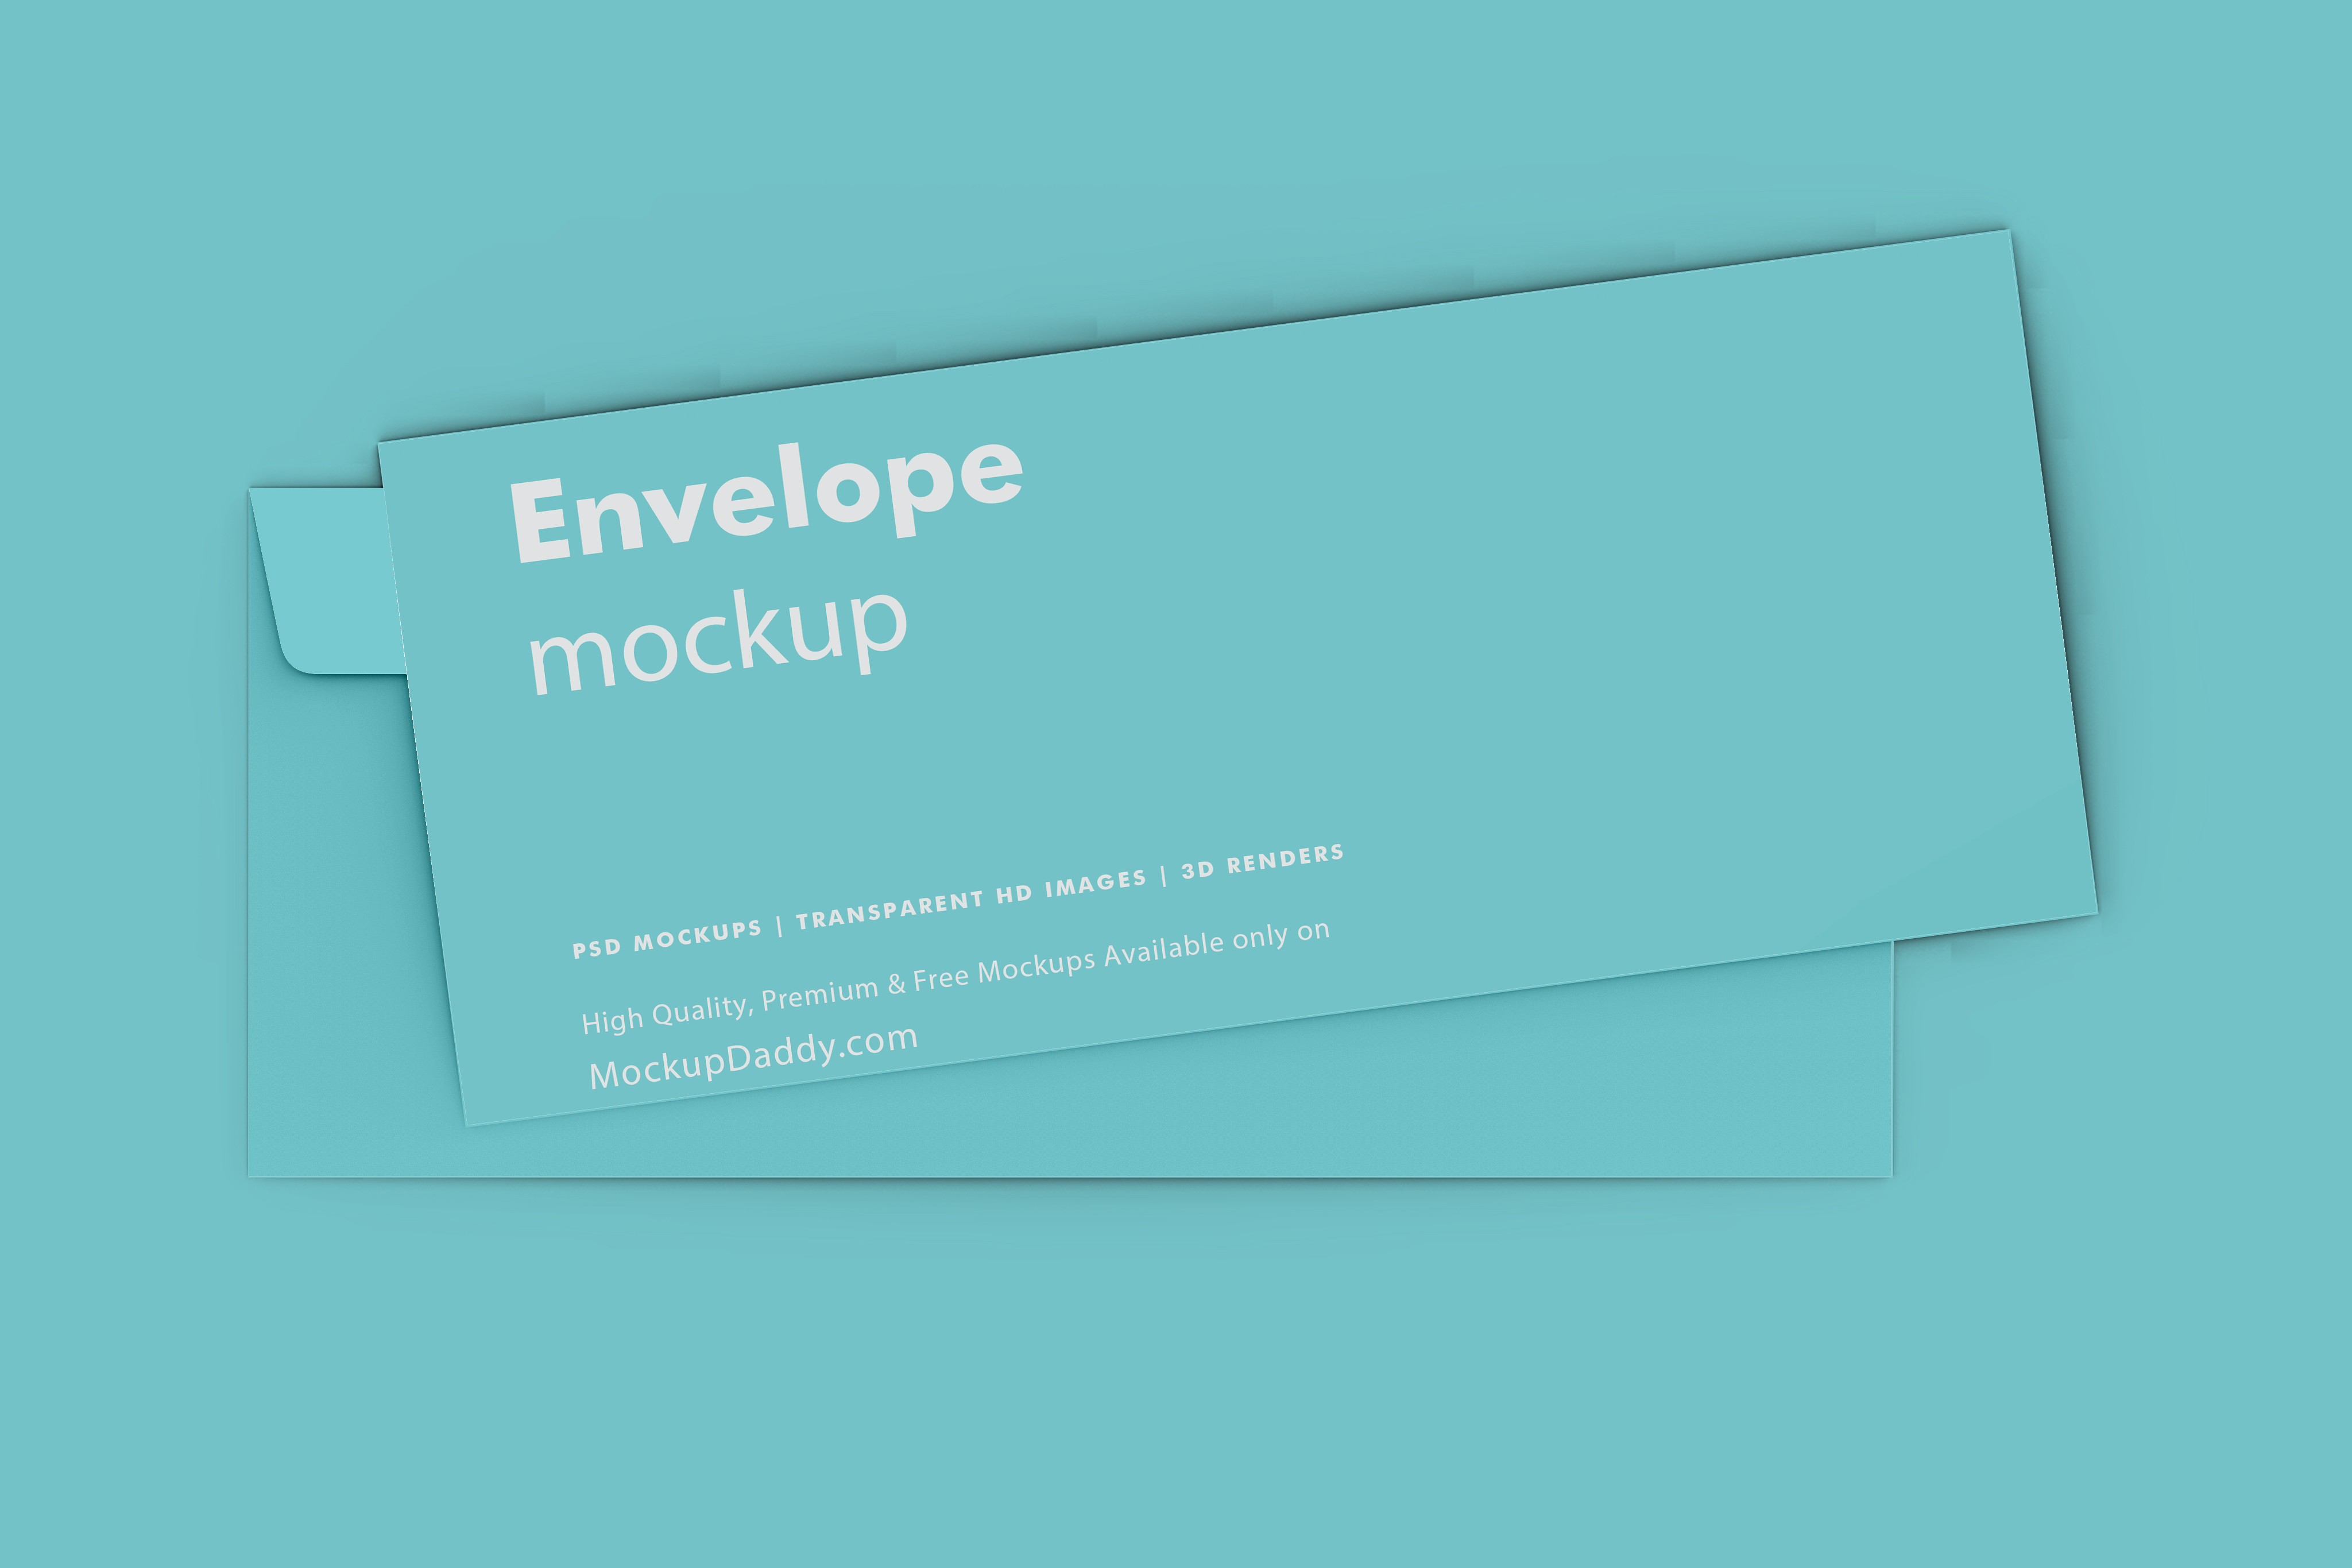 Download Dl Envelope Mockup Free - Download Stok Image Vector Free